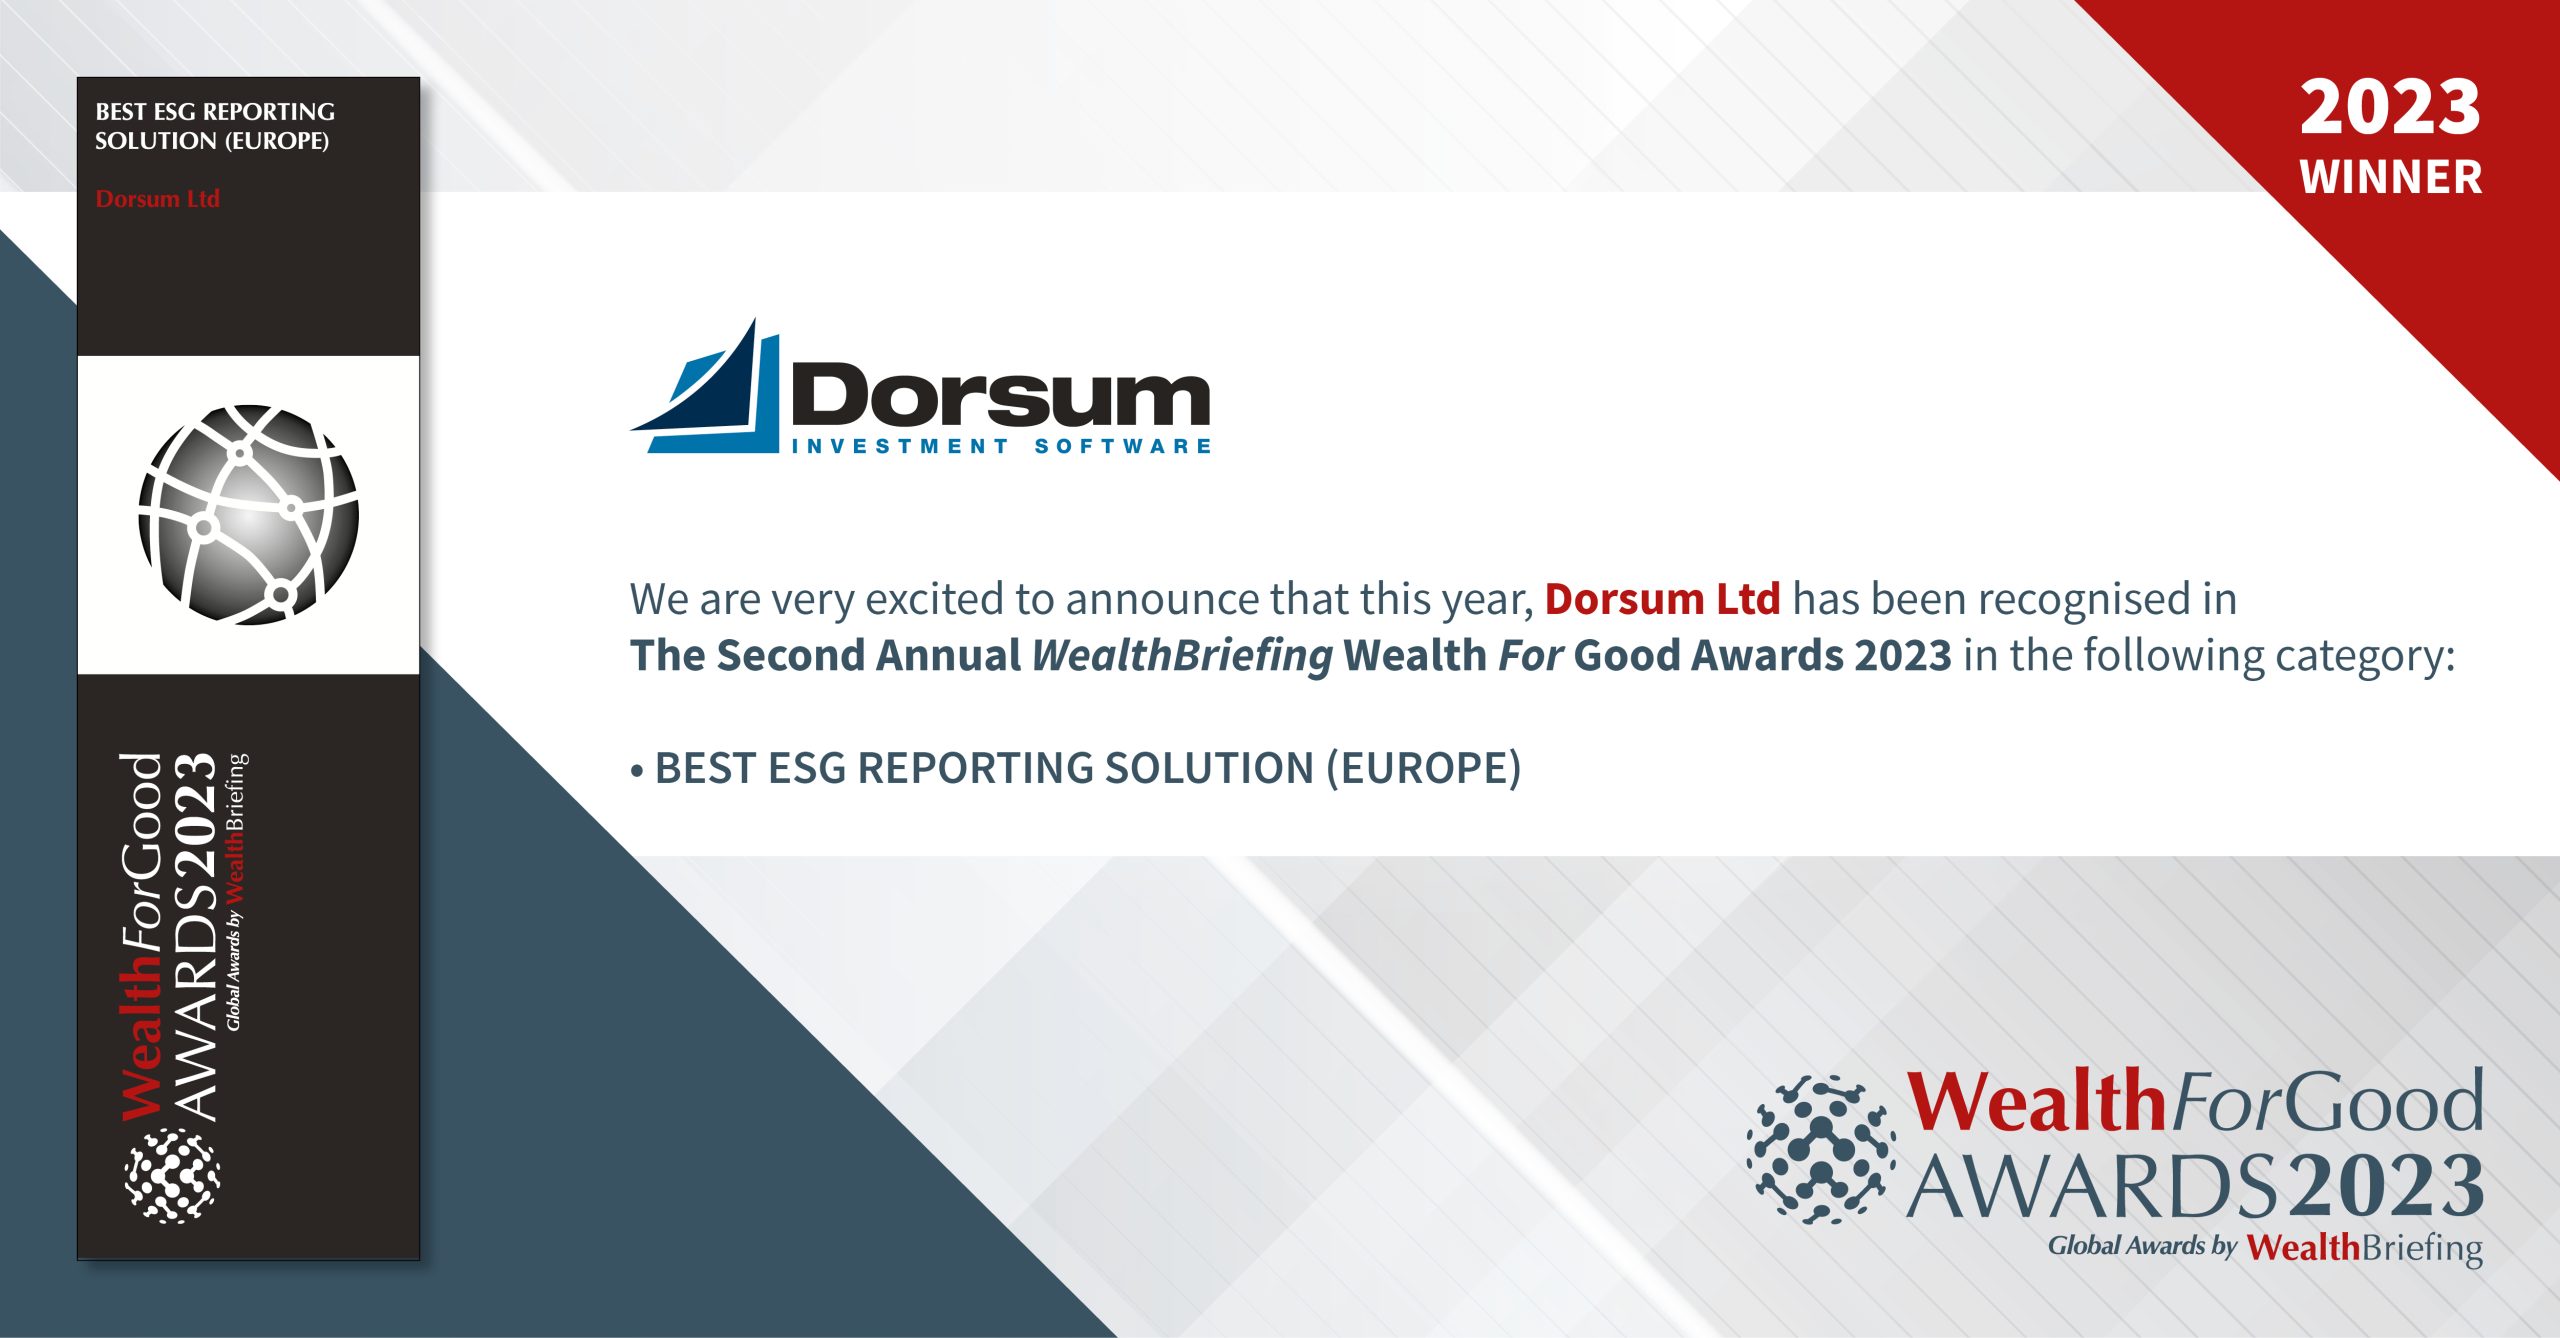 A Dorsum nyerte a ,,Legjobb ESG reporting megoldás (Európa)” díját a WealthForGood Awards 2023-as díjátadóján